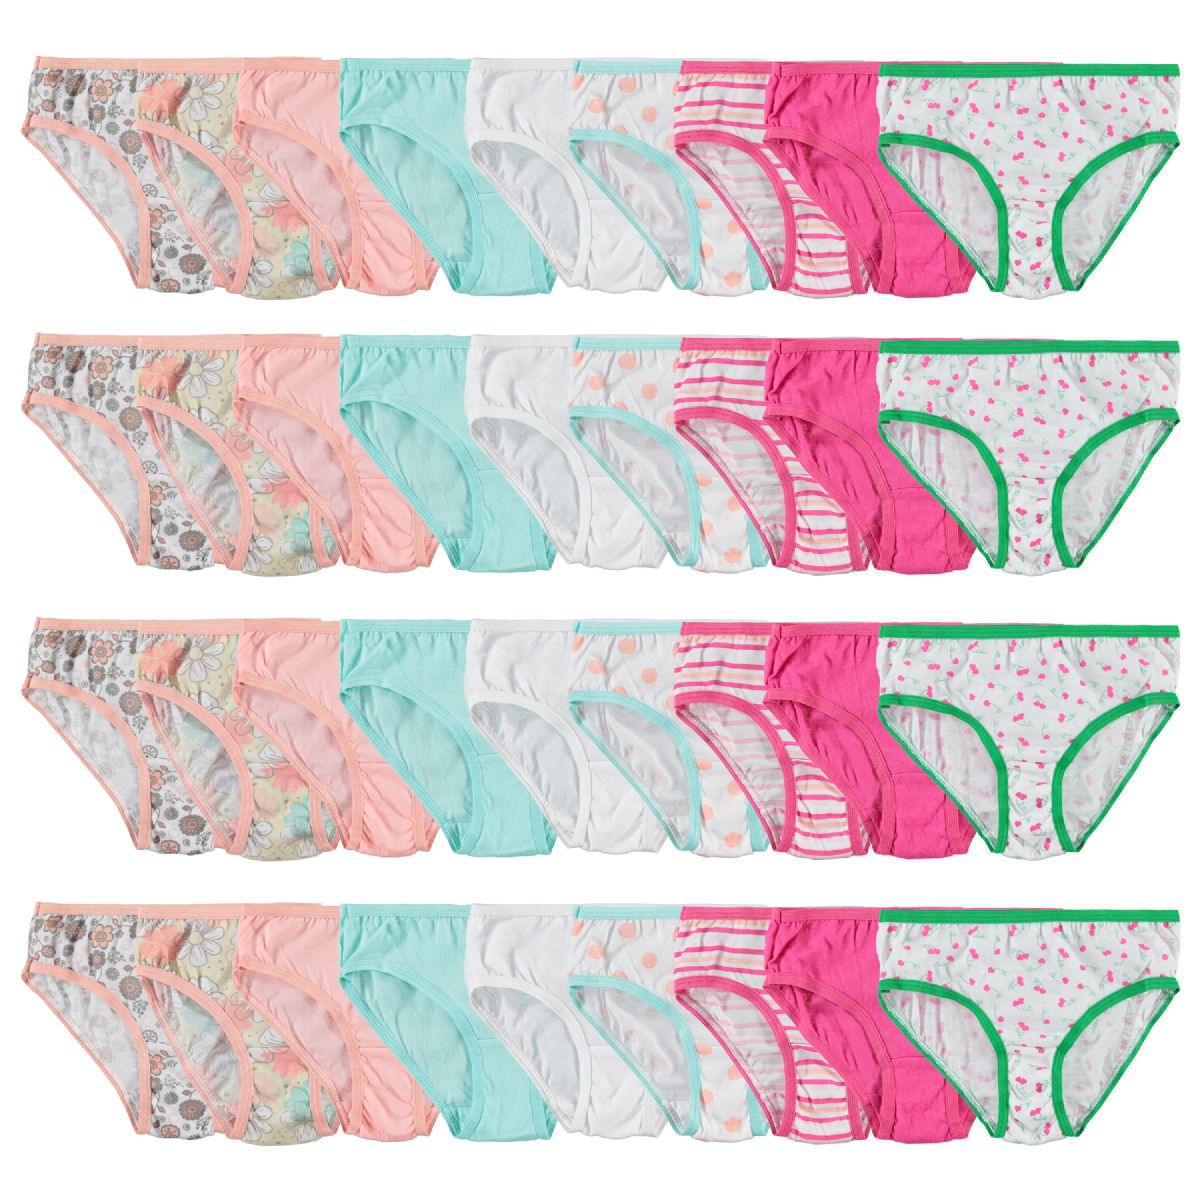 72 Pieces Girls Cotton Blend Assorted Printed Underwear Size 6